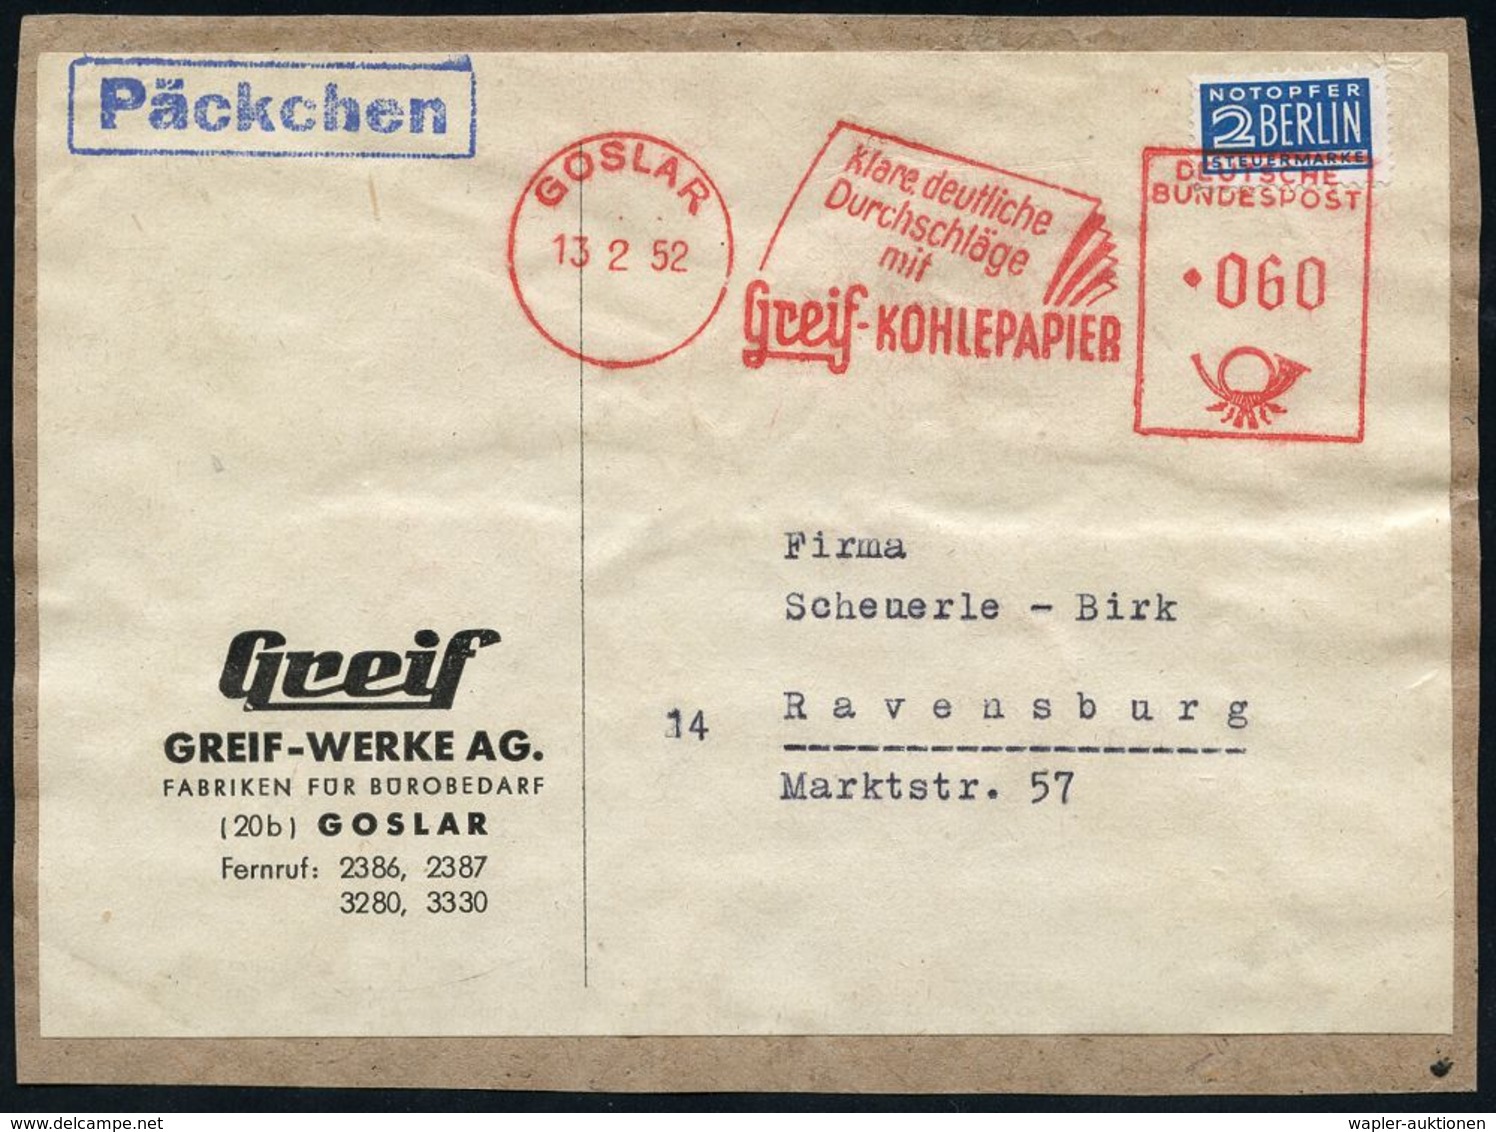 BÜRO / SCHREIBGERÄTE / SCHREIBMASCHINE : GOSLAR/ Klare../ Durchschläge/ Mit/ Greif-KOHLEPAPIER 1952 (13.2.) AFS 060 Pf.  - Unclassified